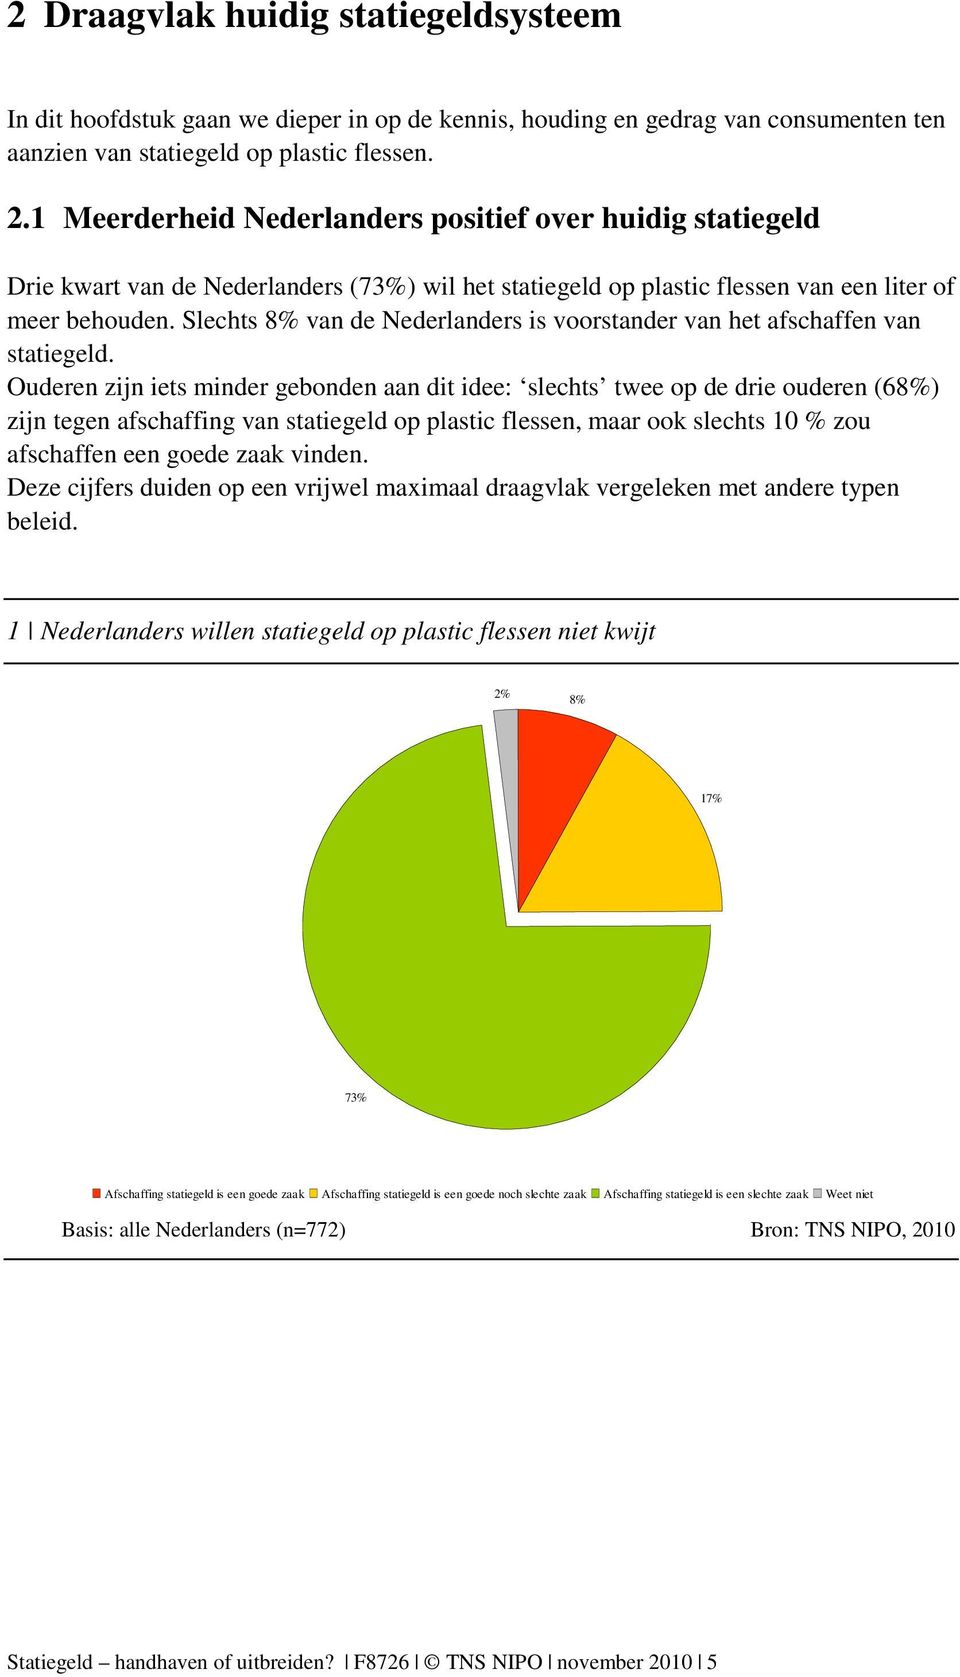 Slechts 8% van de Nederlanders is voorstander van het afschaffen van statiegeld.